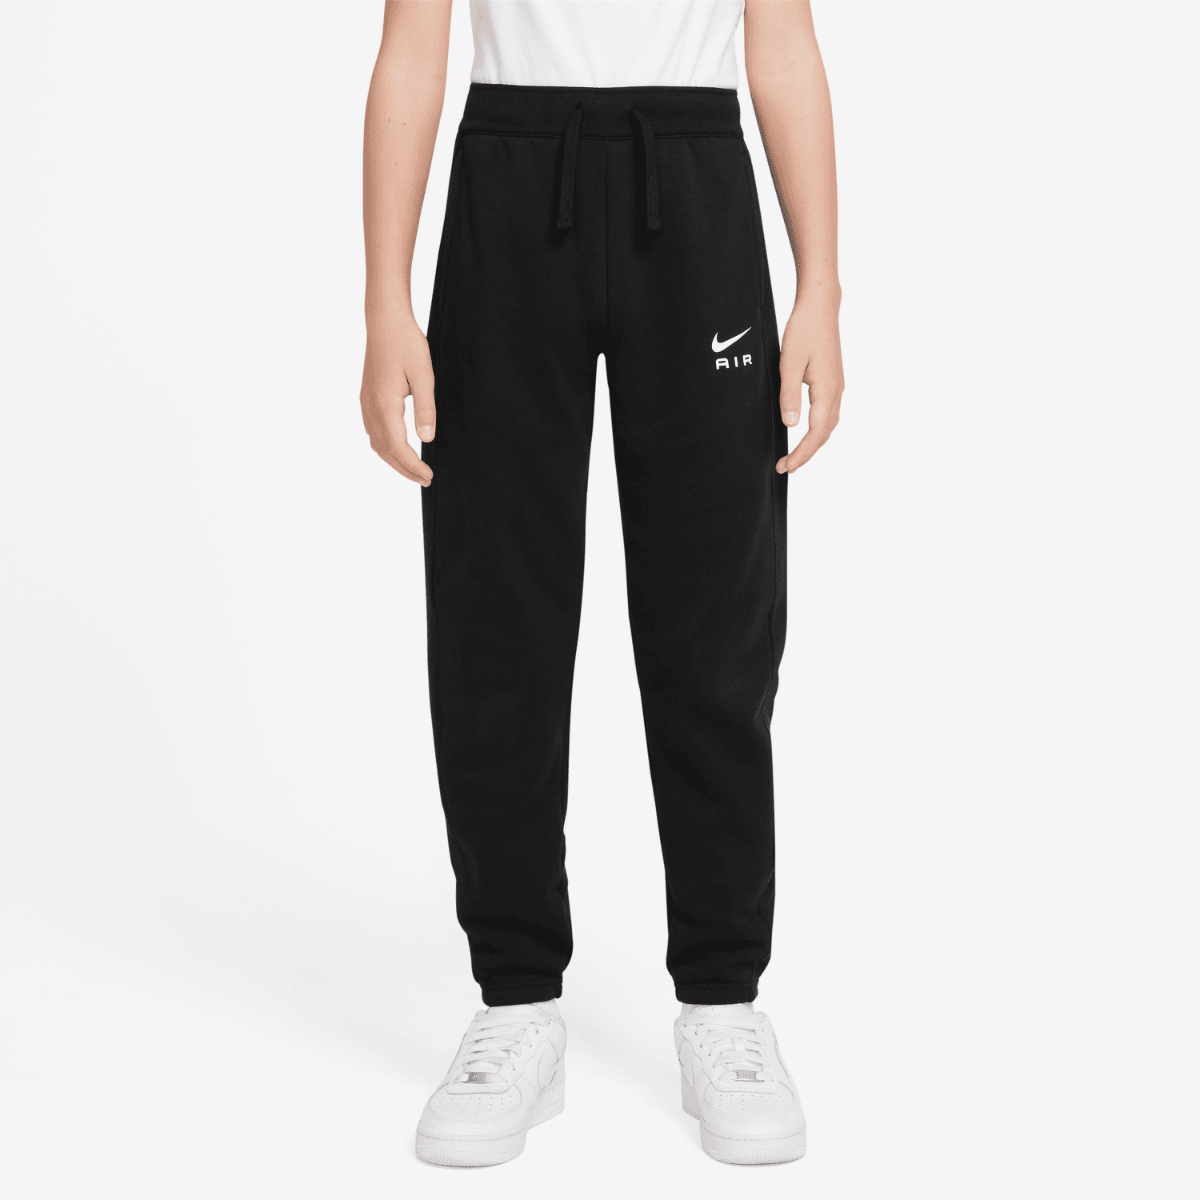 Pantalon Nike Air Junior - Blanc/Noir